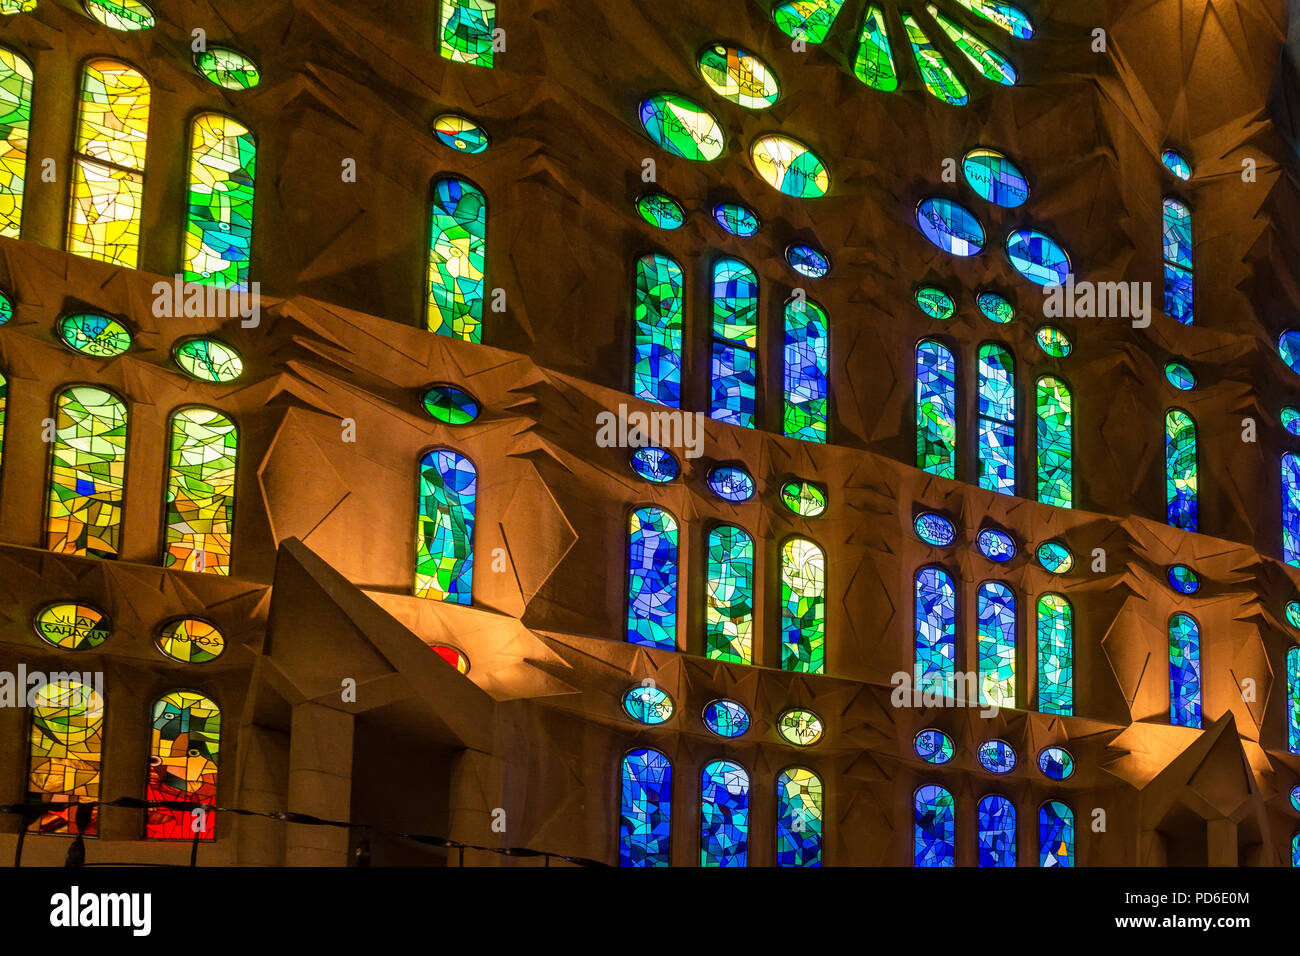 Bunte Glasfenster der Kathedrale - Antoni Barcelona, gestaltet Alamy von Architekten - Römisch-katholische große Gaudi Stockfotografie unvollendete Sagrada dem katalanischen Familia Kirche in